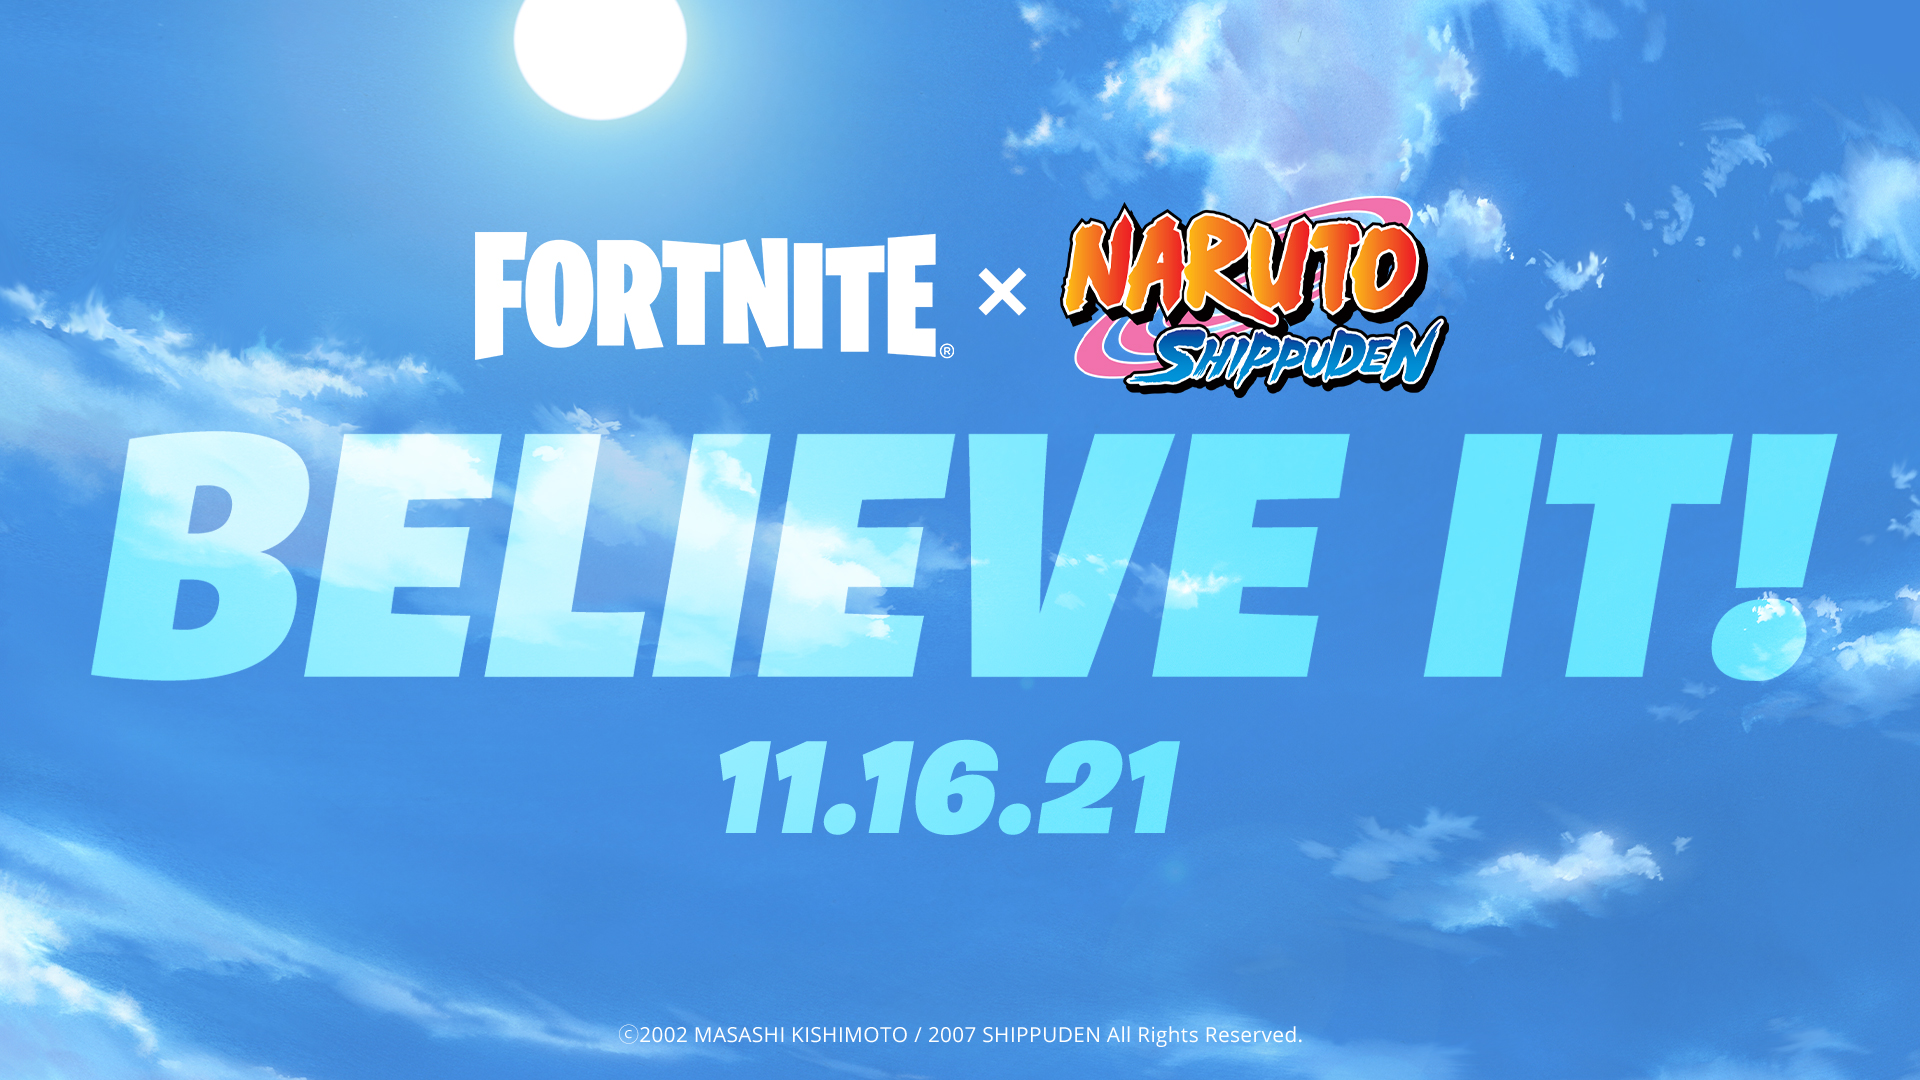 นินจาเตรียมบุก!! กับ Fortnite x Naruto Shippuden ประกาศอย่างเป็นทางการในวันที่ 16 พฤศจิกายนนี้